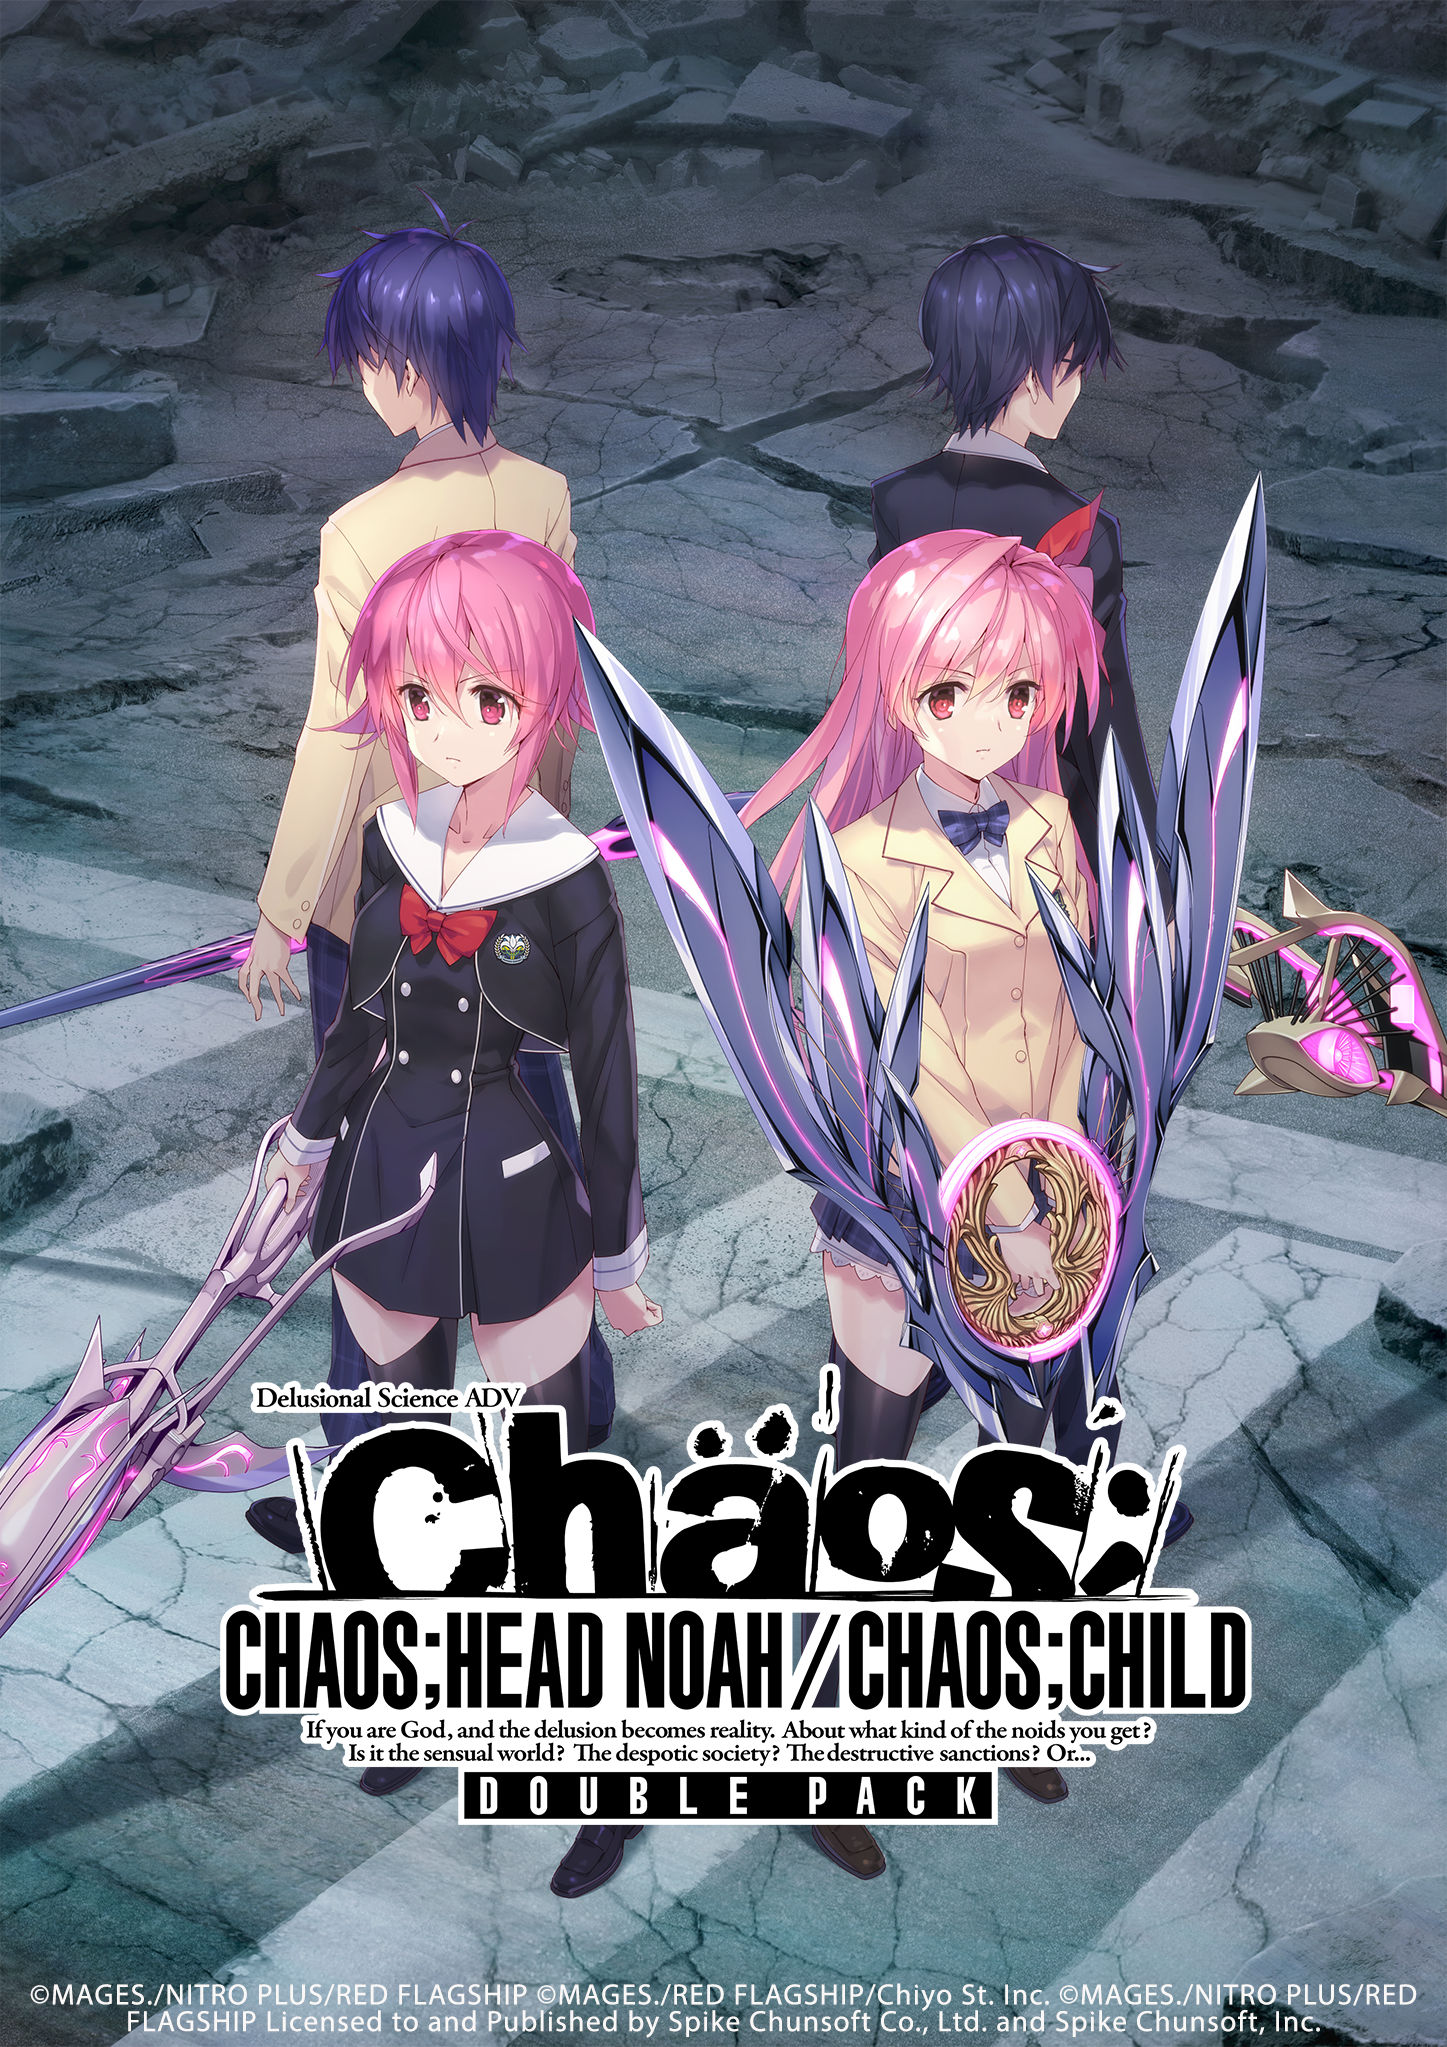 Chaos head noah in steam